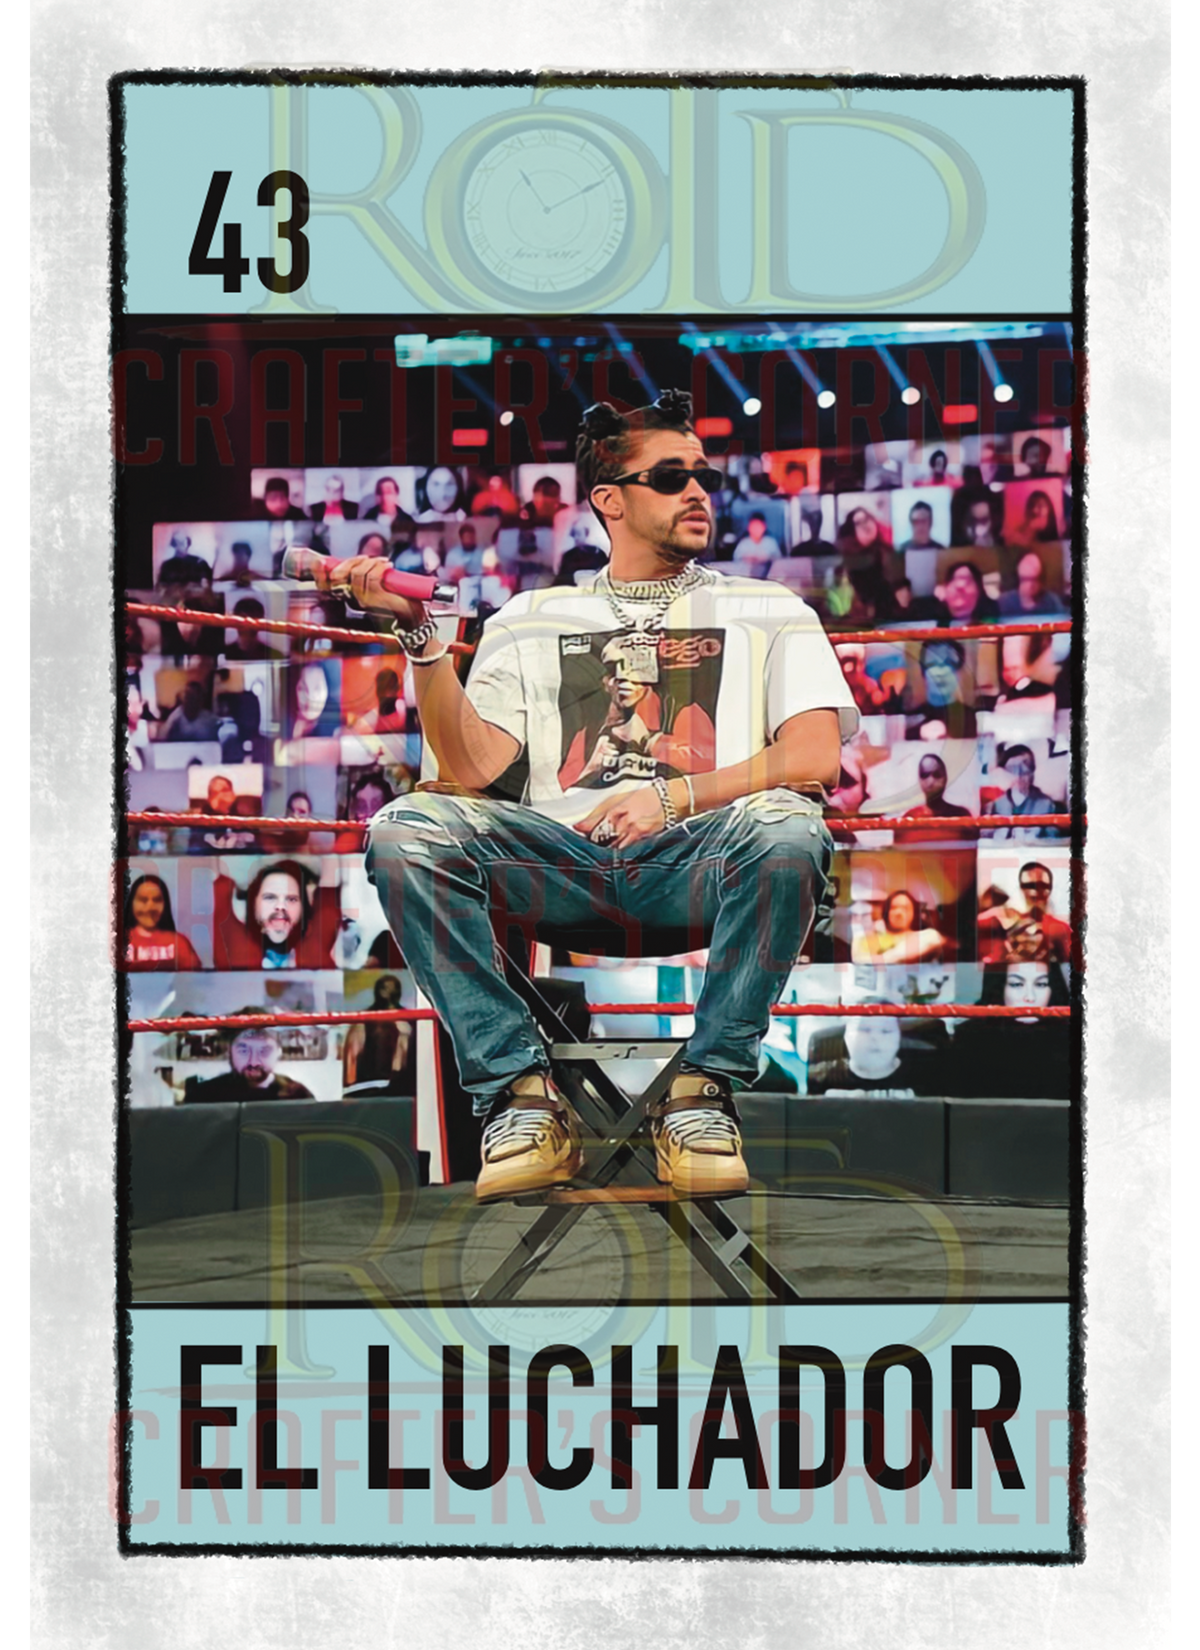 DTF Screen Print Image - 43 El Luchador